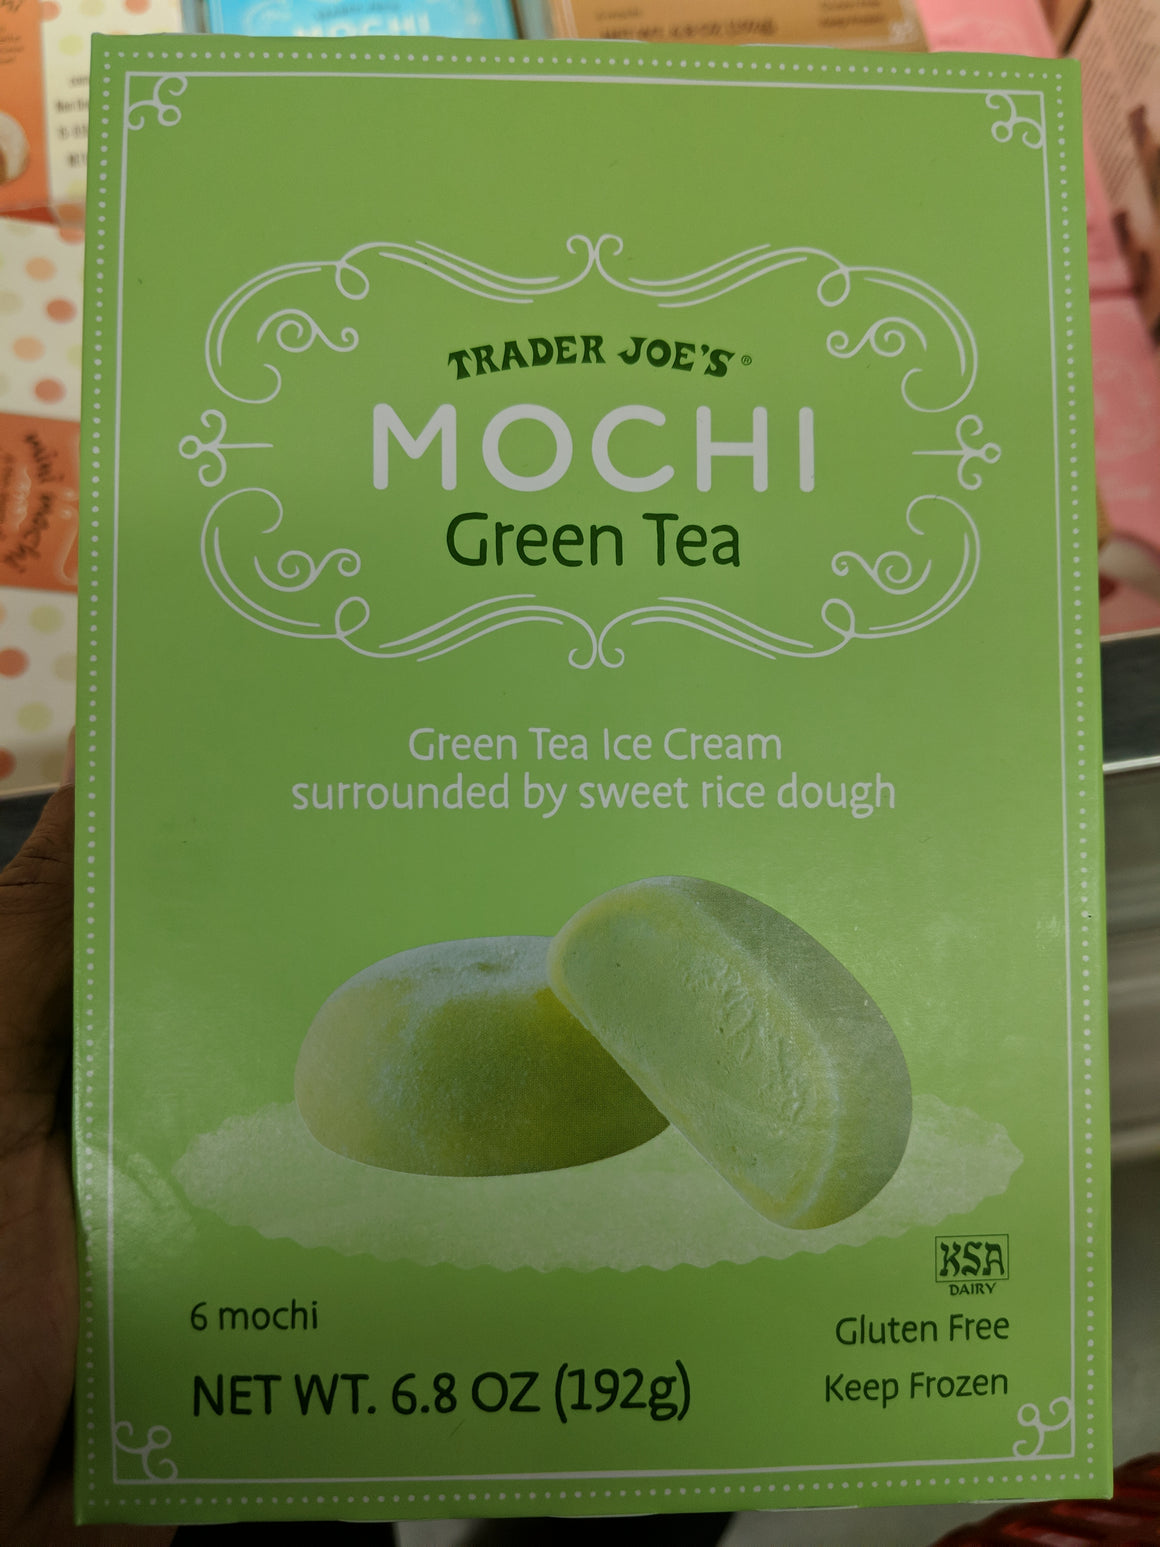 Trader Joe's Mochi Ice Cream (Green Tea) – We'll Get The Food